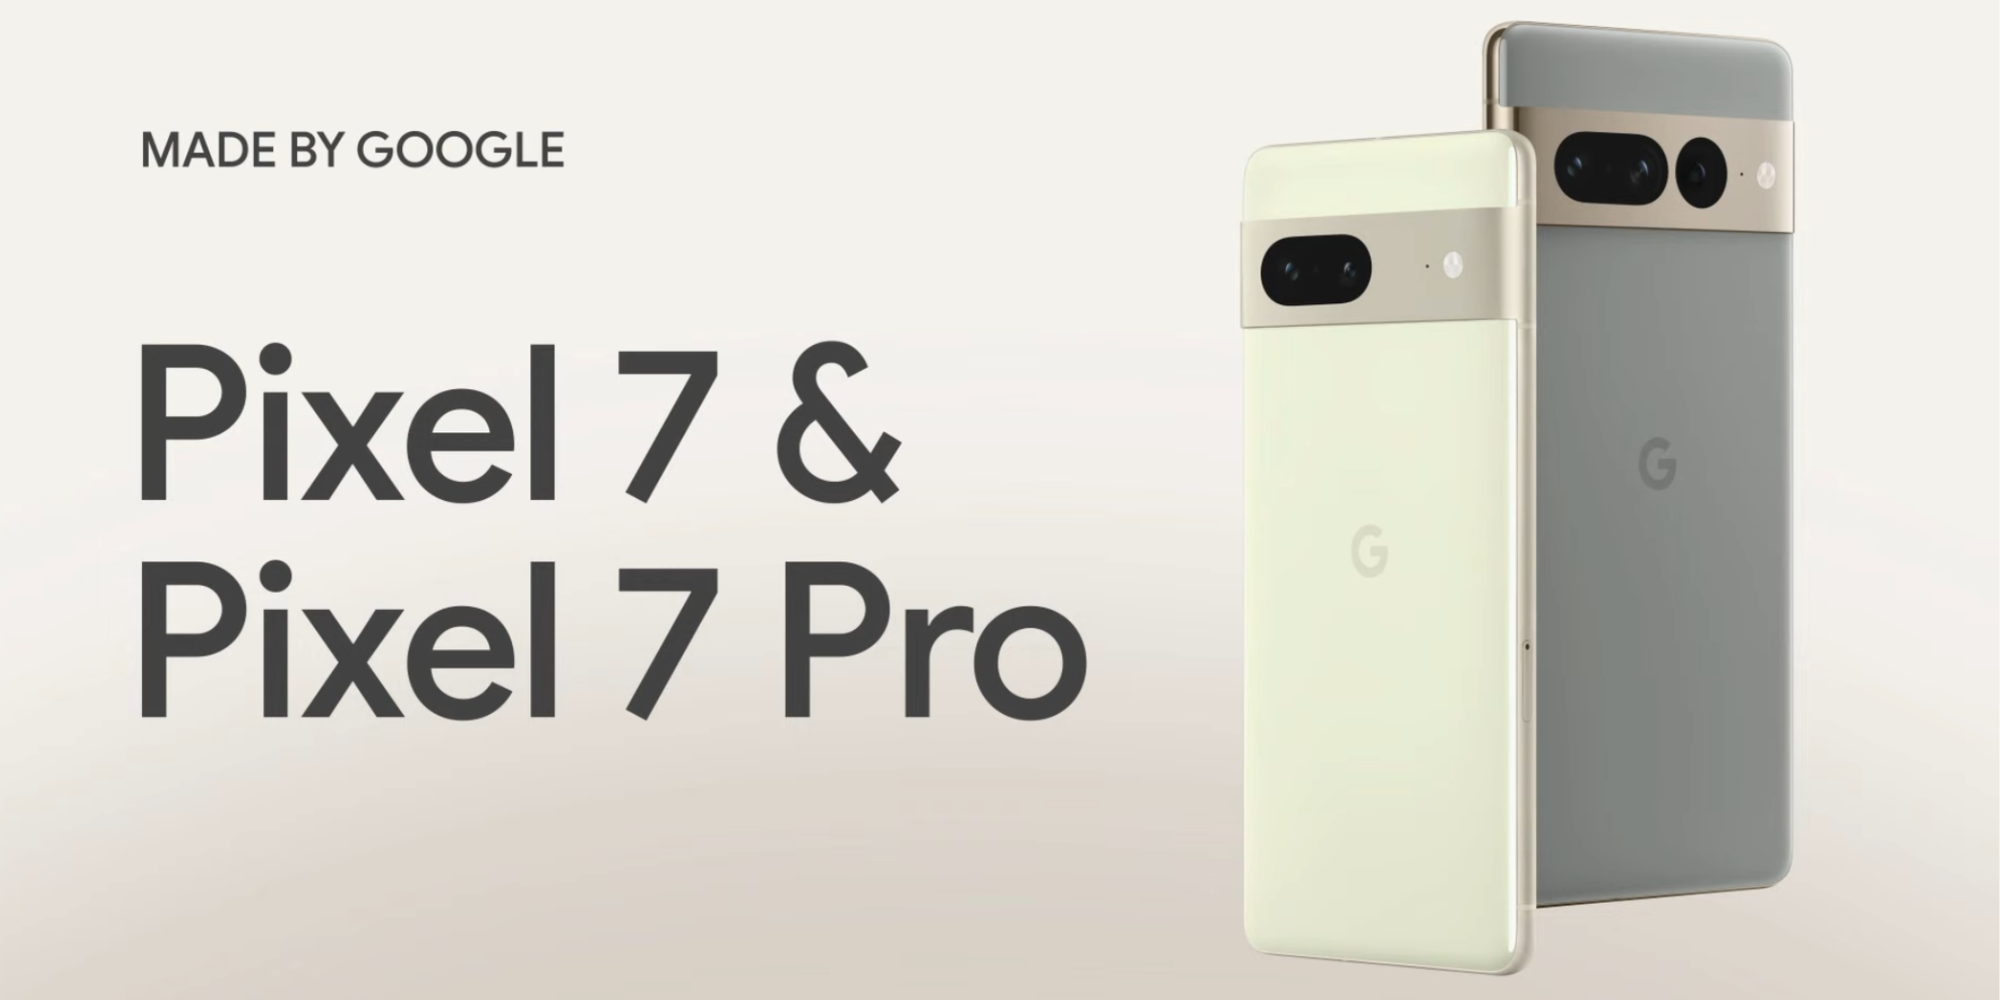 Google Pixel 7 & Pixel 7 Pro launched